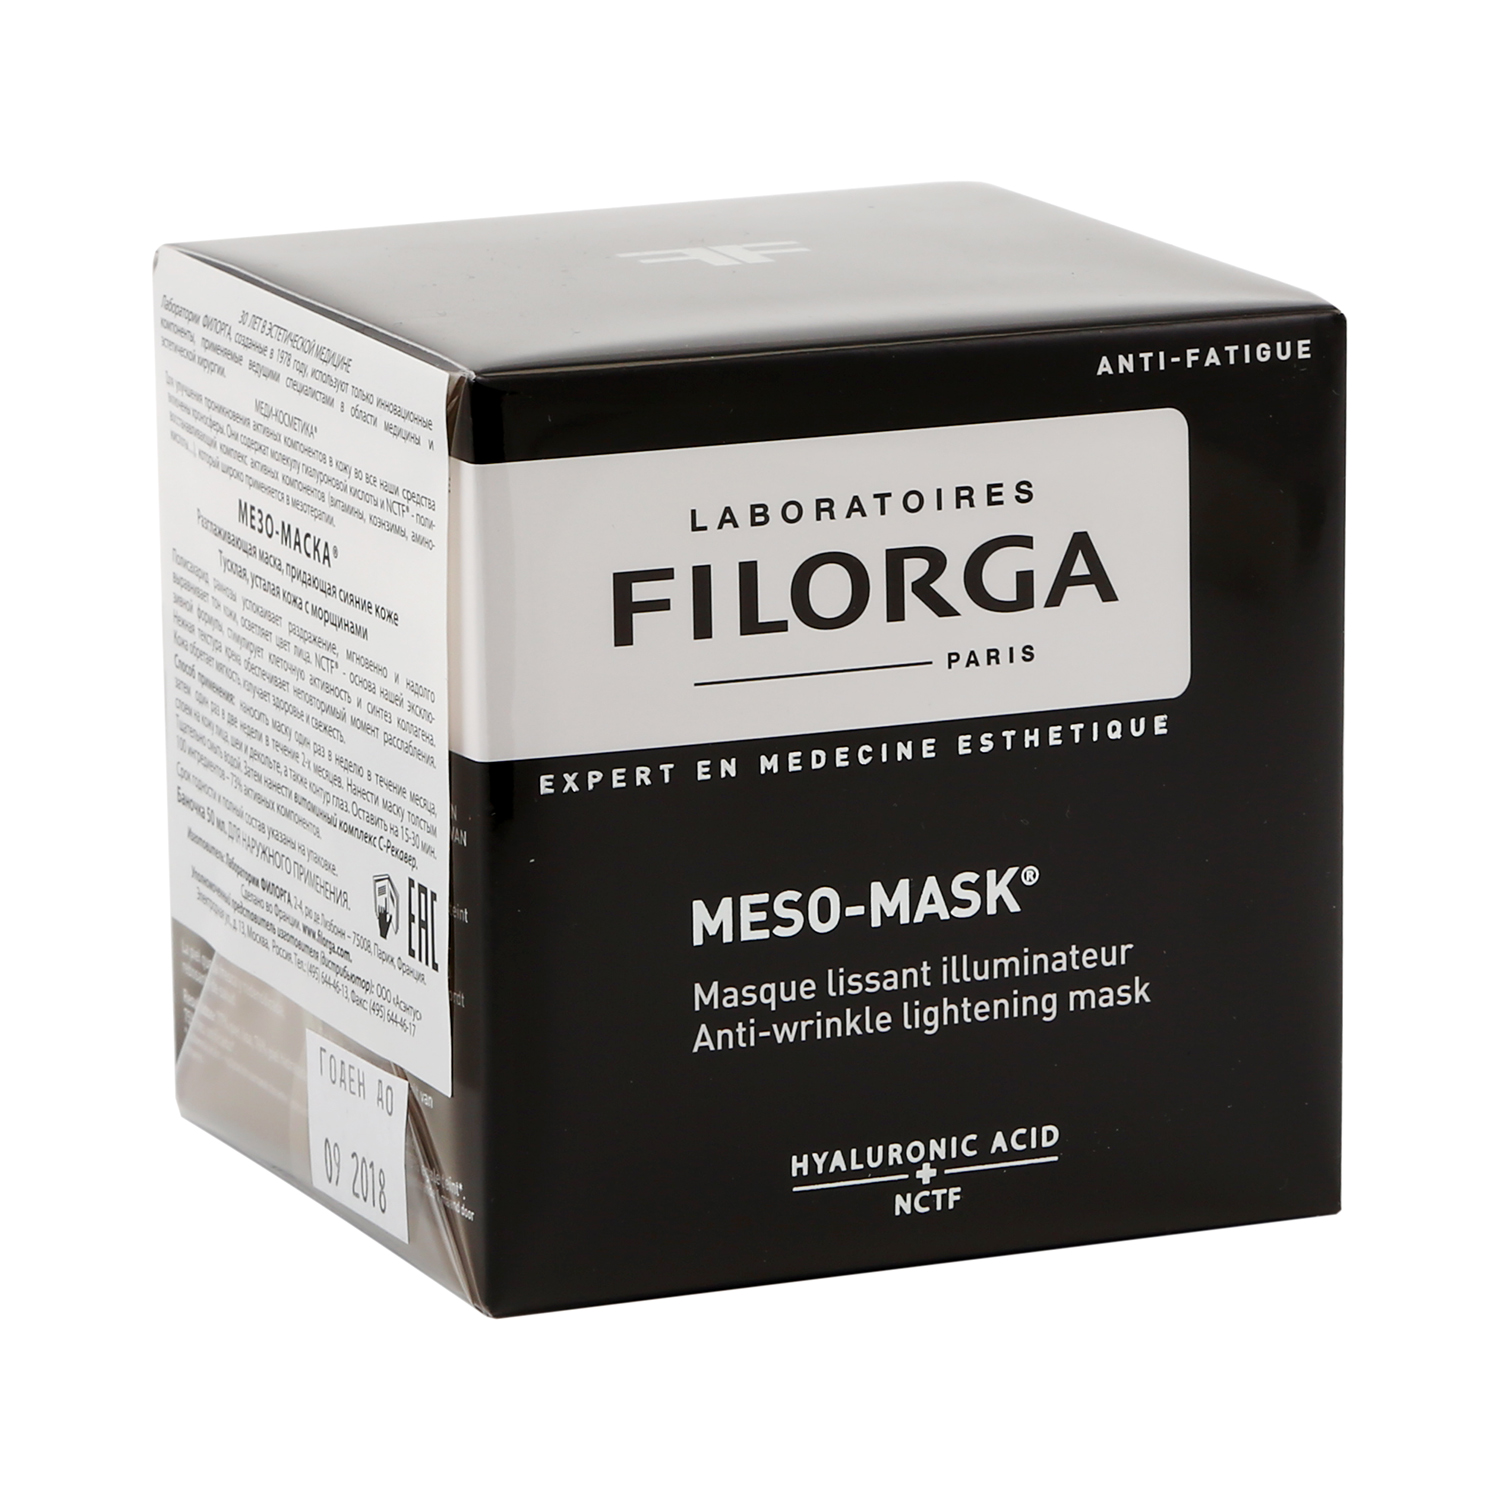 Филорга Мезо-Маска маска для лица разглаживающая придающая сияние 50мл, Lab.Filorga  - купить